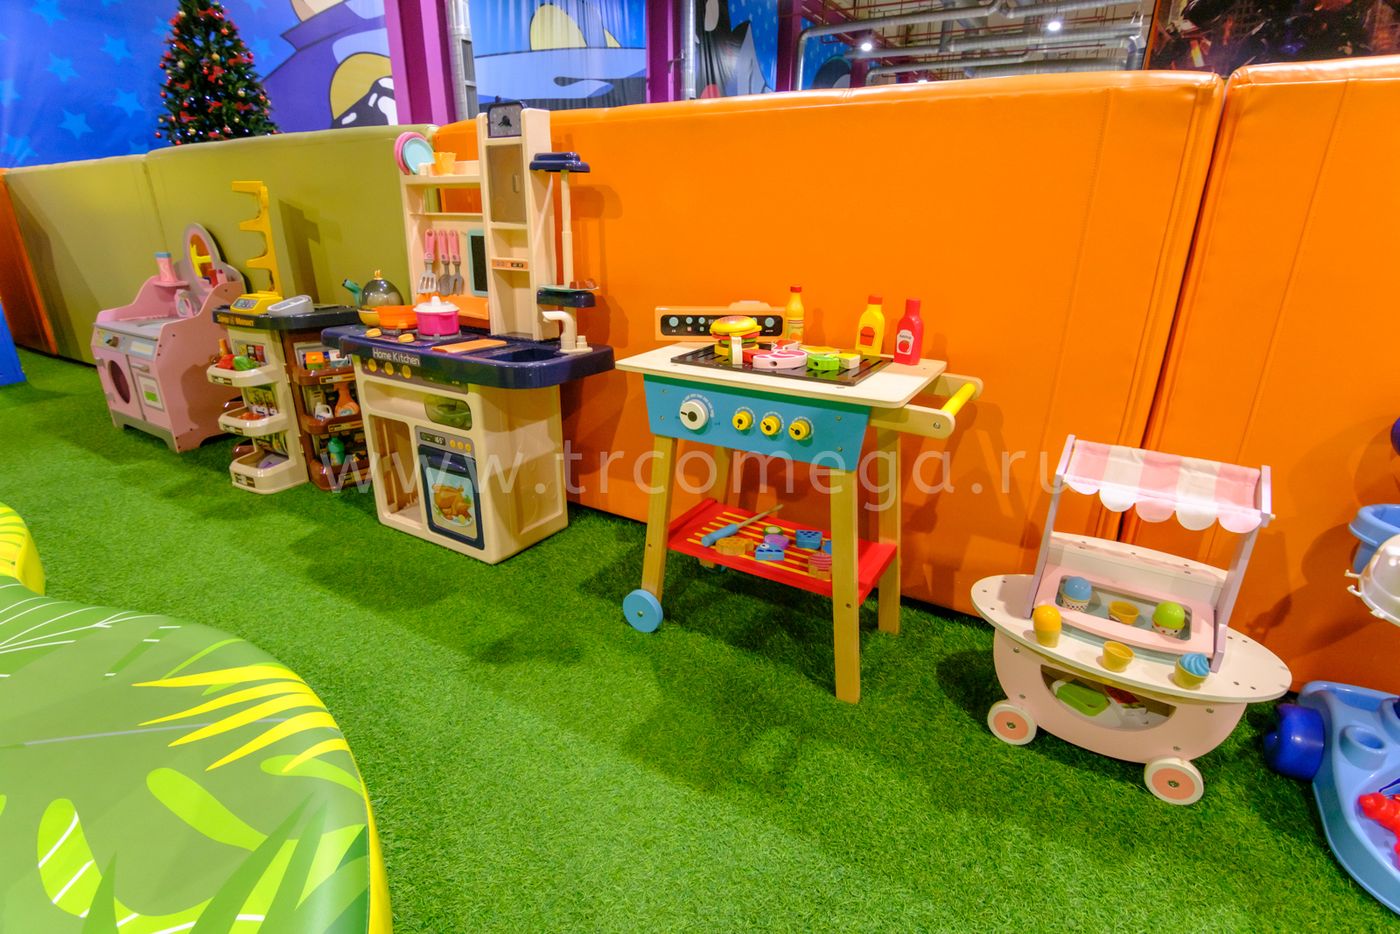 Какая детская игровая комната, организованная в торгово-развлекательном центре, будет интересна малышу?